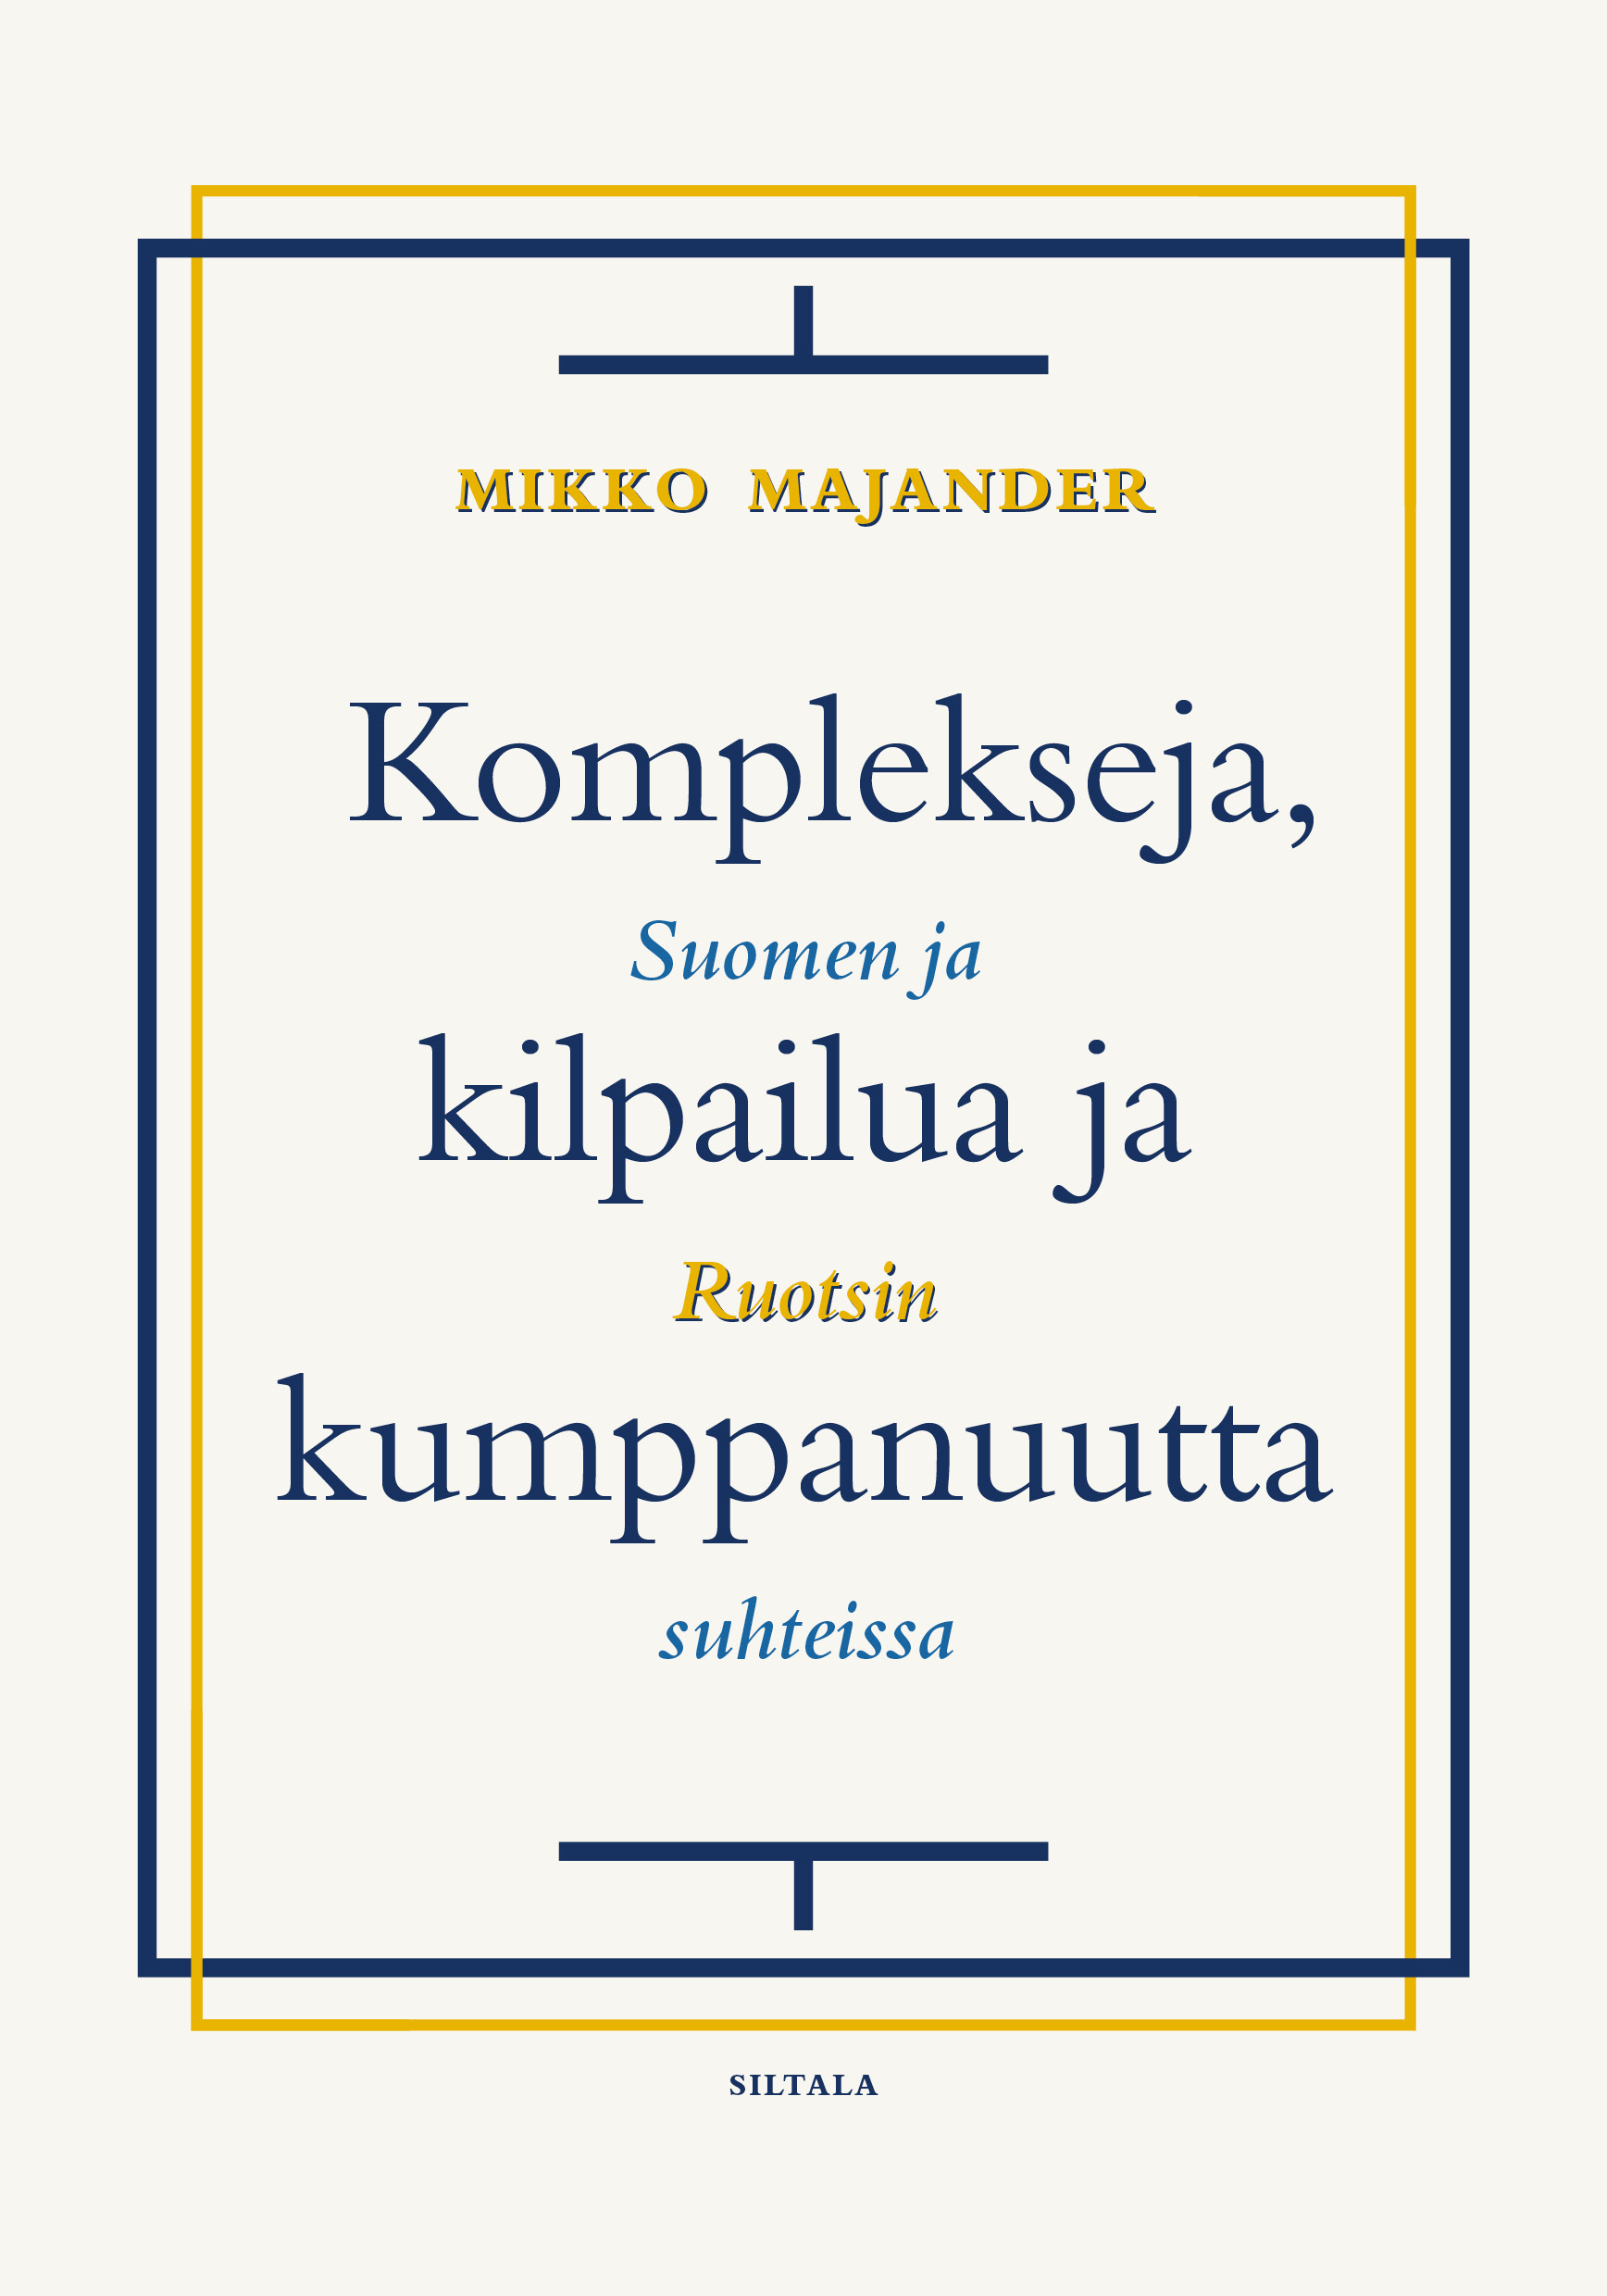 Mikko Majander: Komplekseja, kilpailua ja kumppanuutta (Finnish language, 2020, Kustannusosakeyhtiö Siltala)